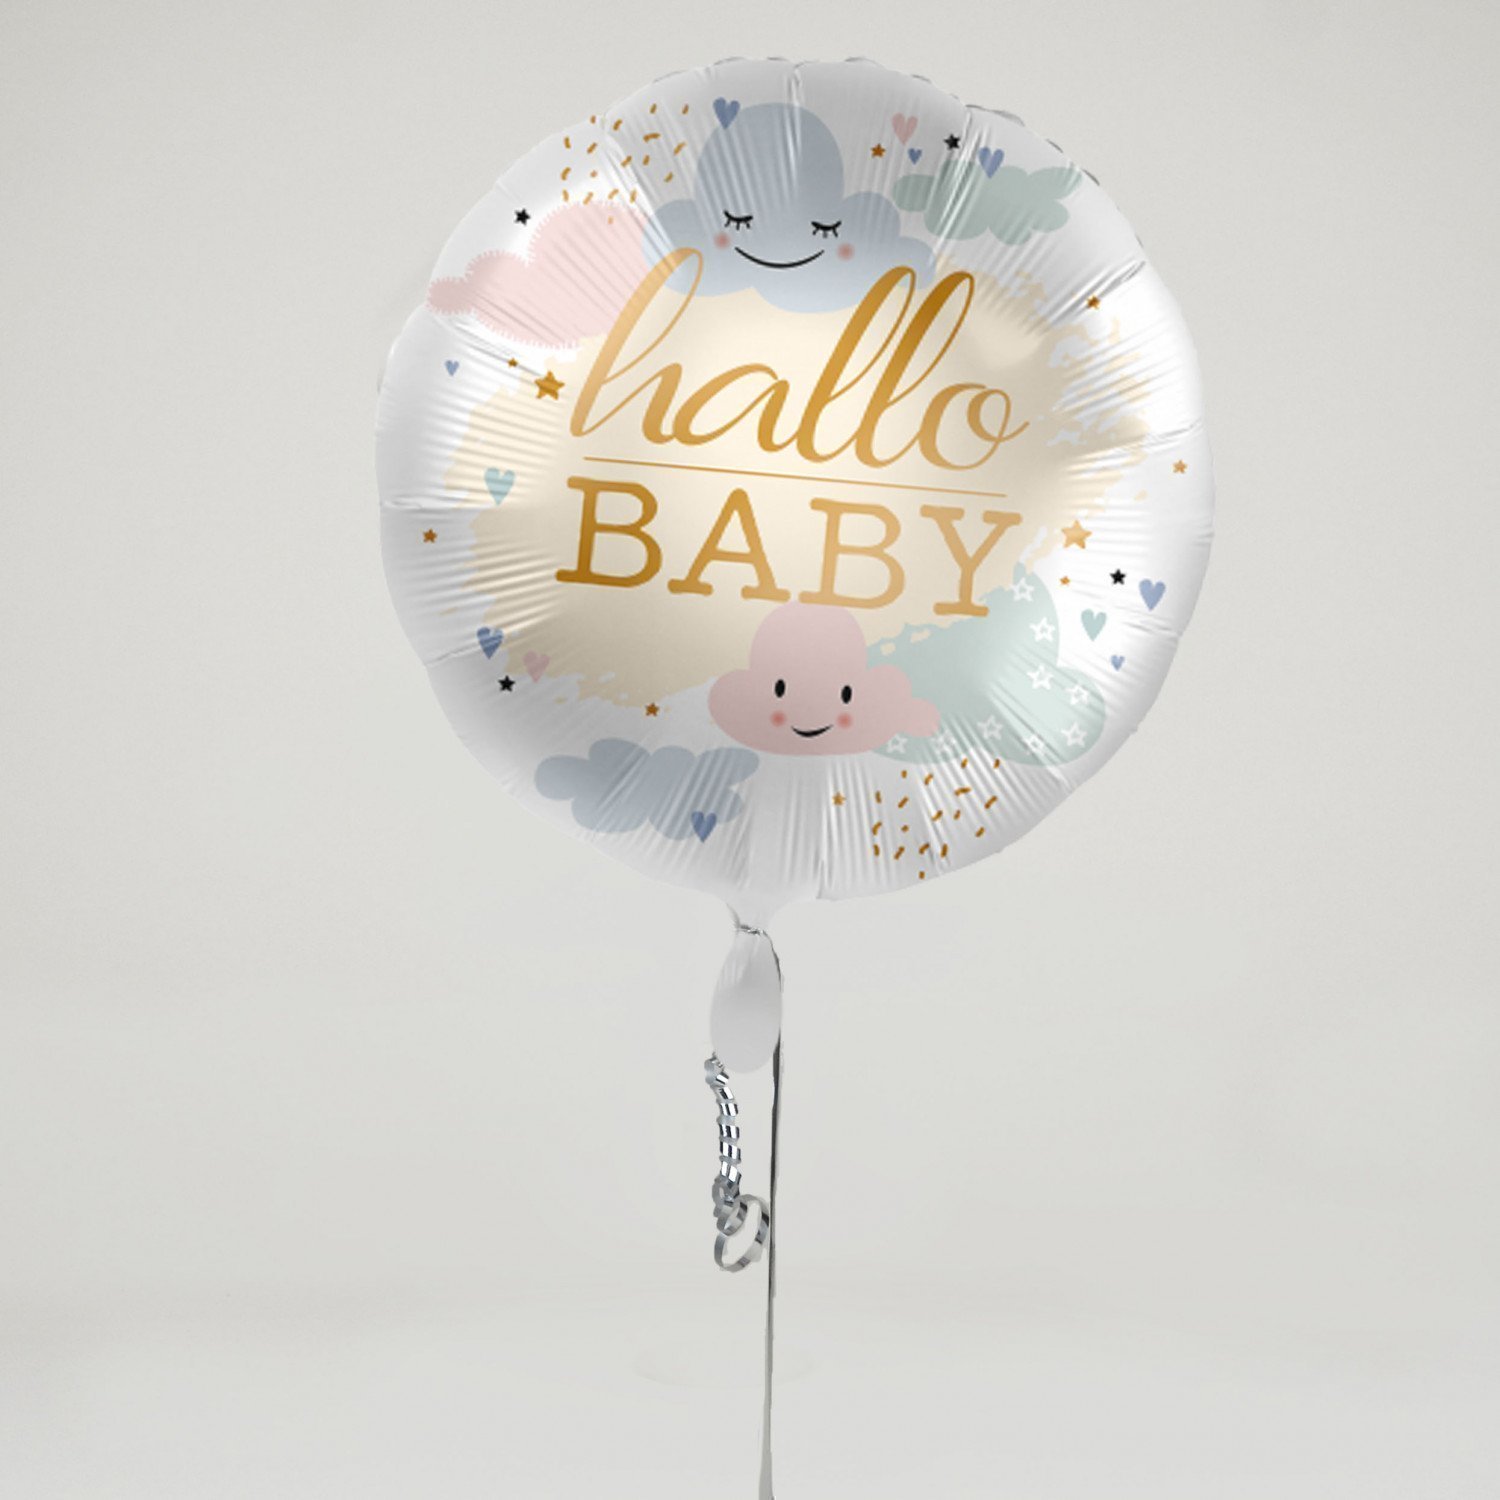 Hallo Baby - Balloon